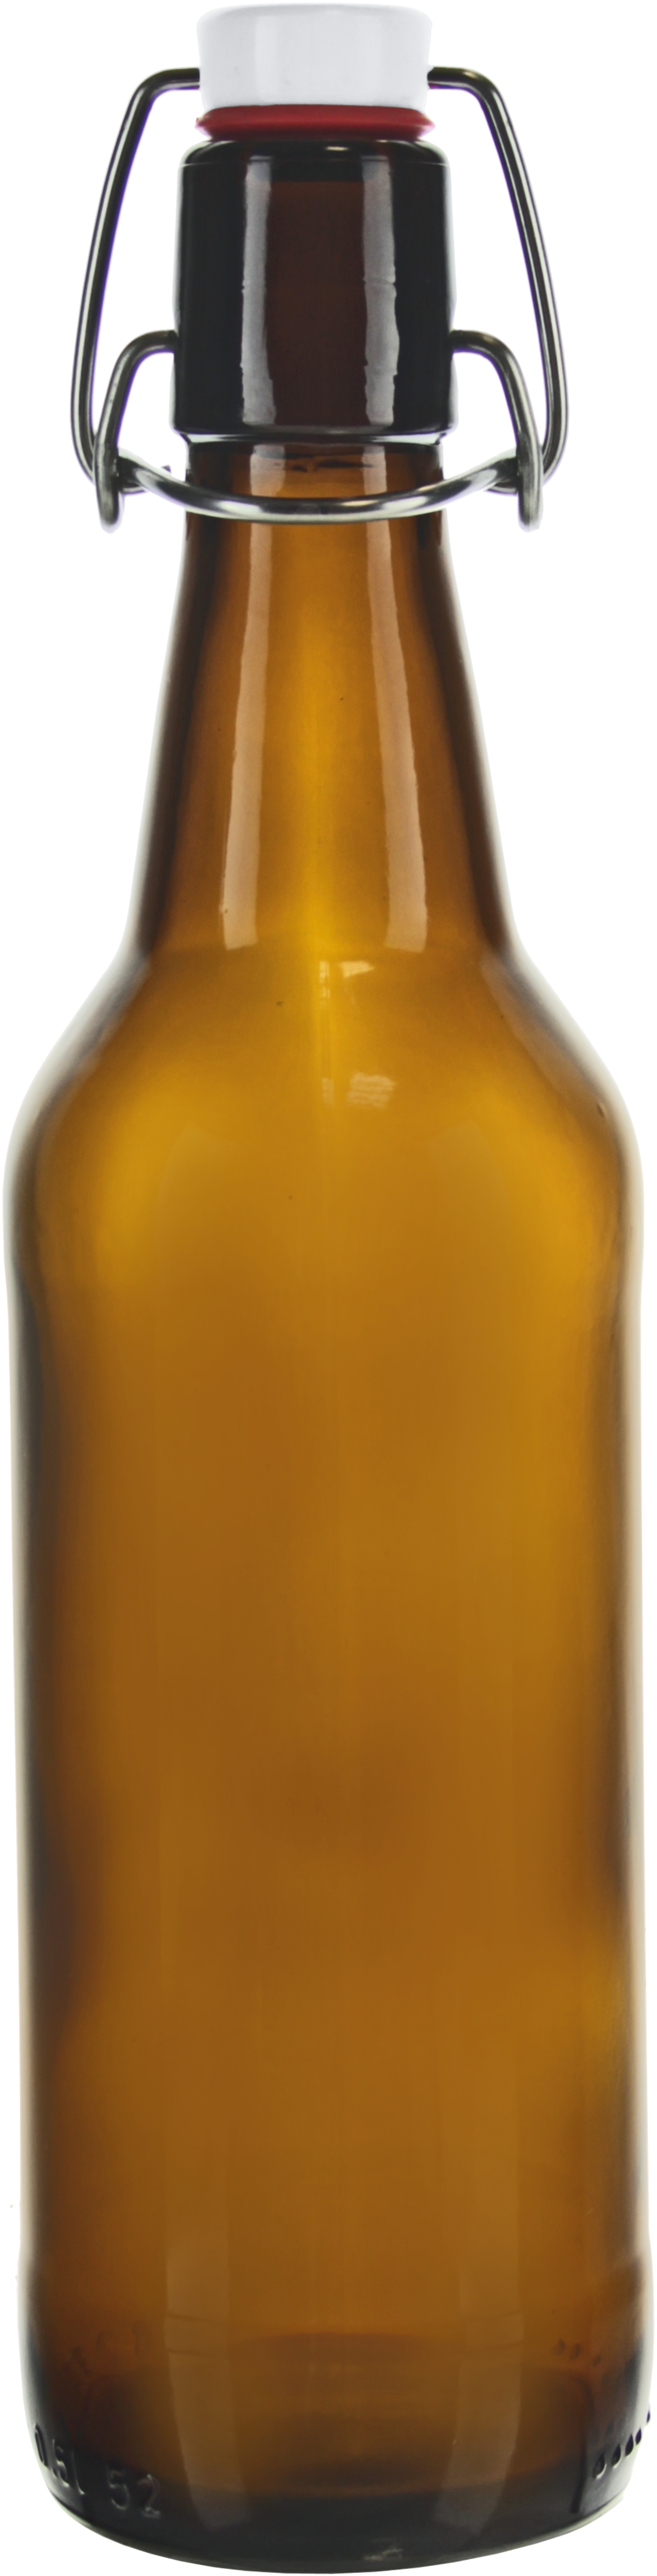 Bierflasche mit Bügelverschluss 500ml 12 Stk.